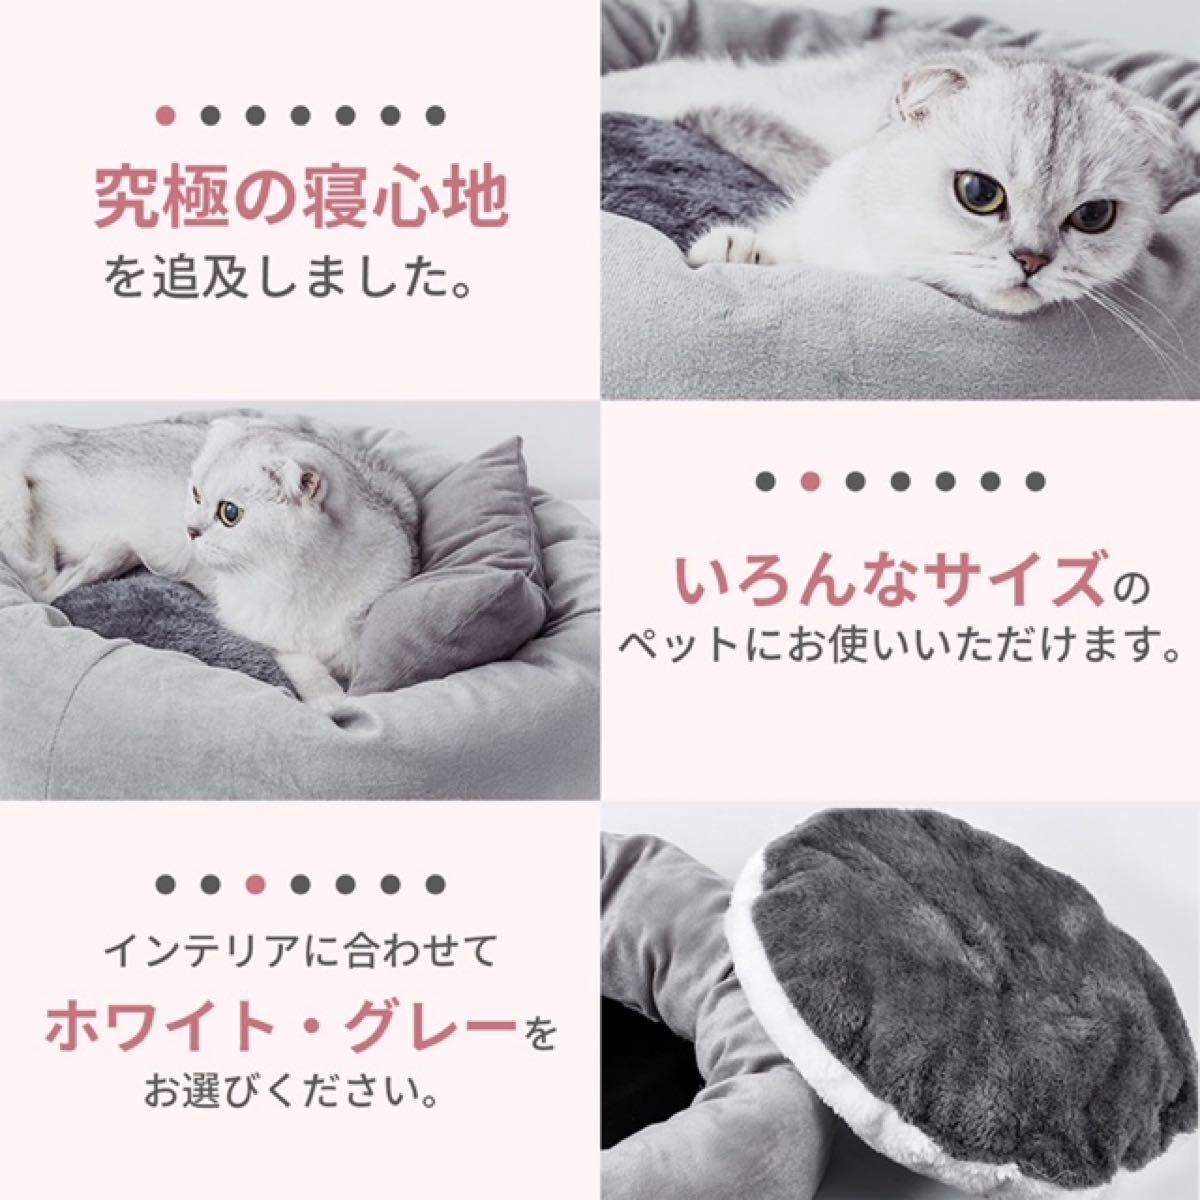 【新品】ペットベッド 冬用 おしゃれ 暖かい 犬ベット 猫ベッド クッション